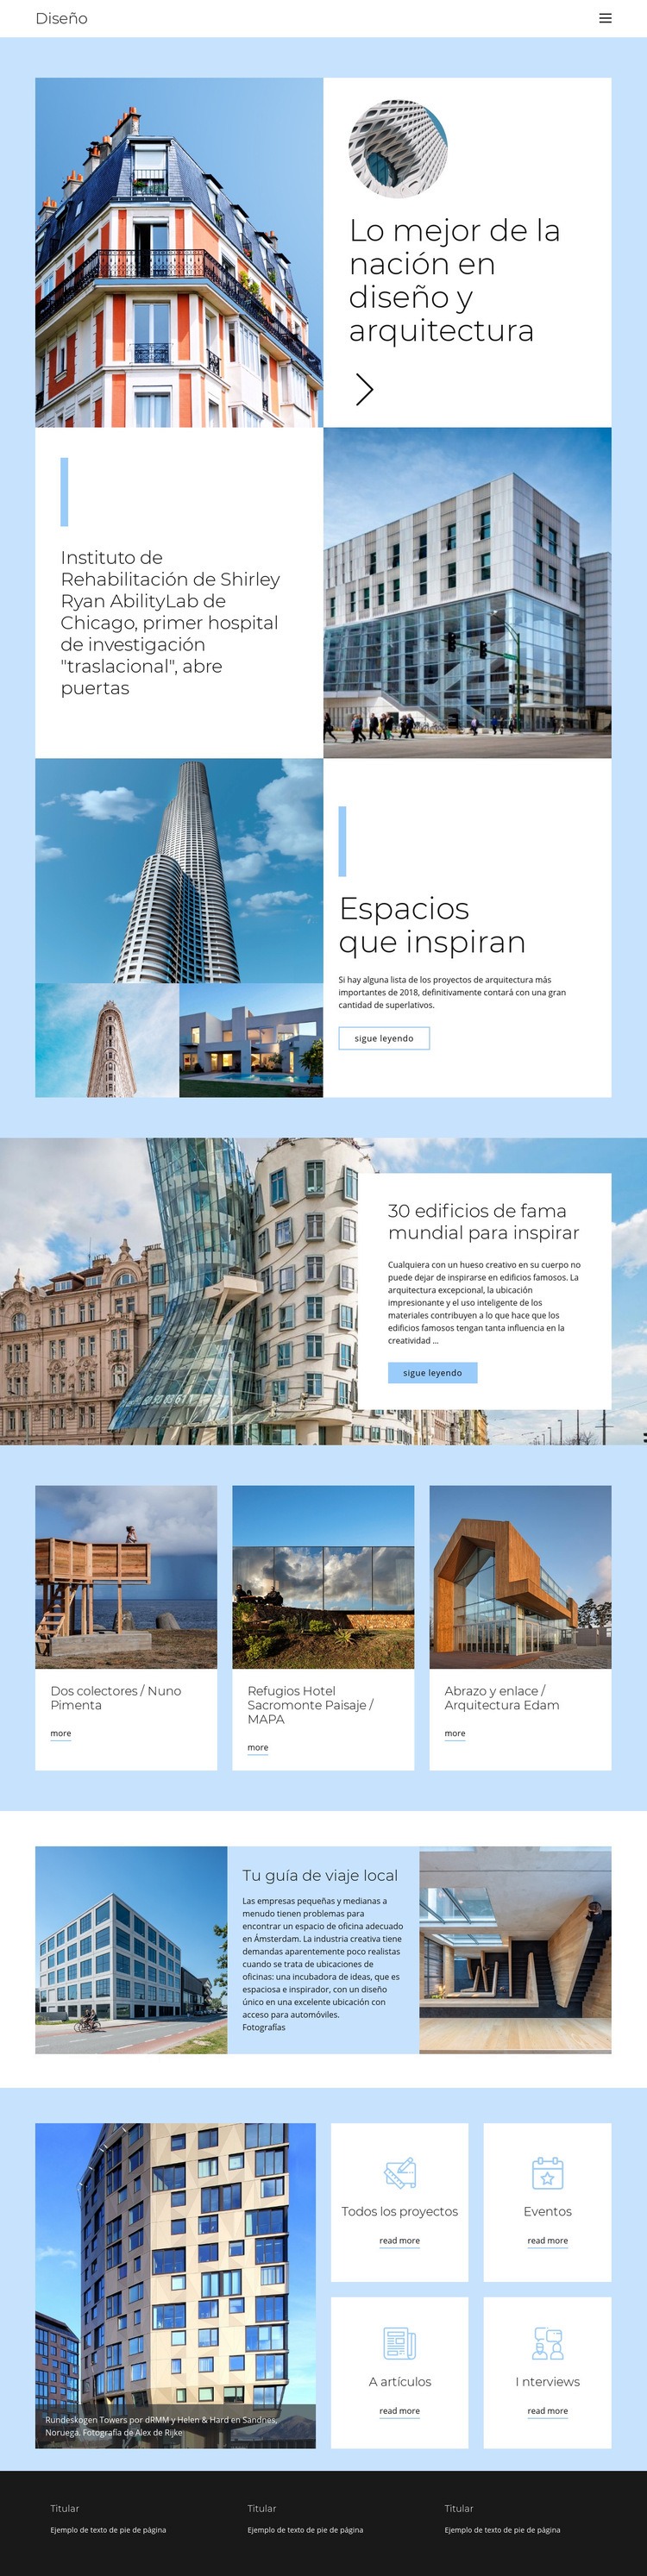 Guía de arquitectura de la ciudad Plantilla de una página